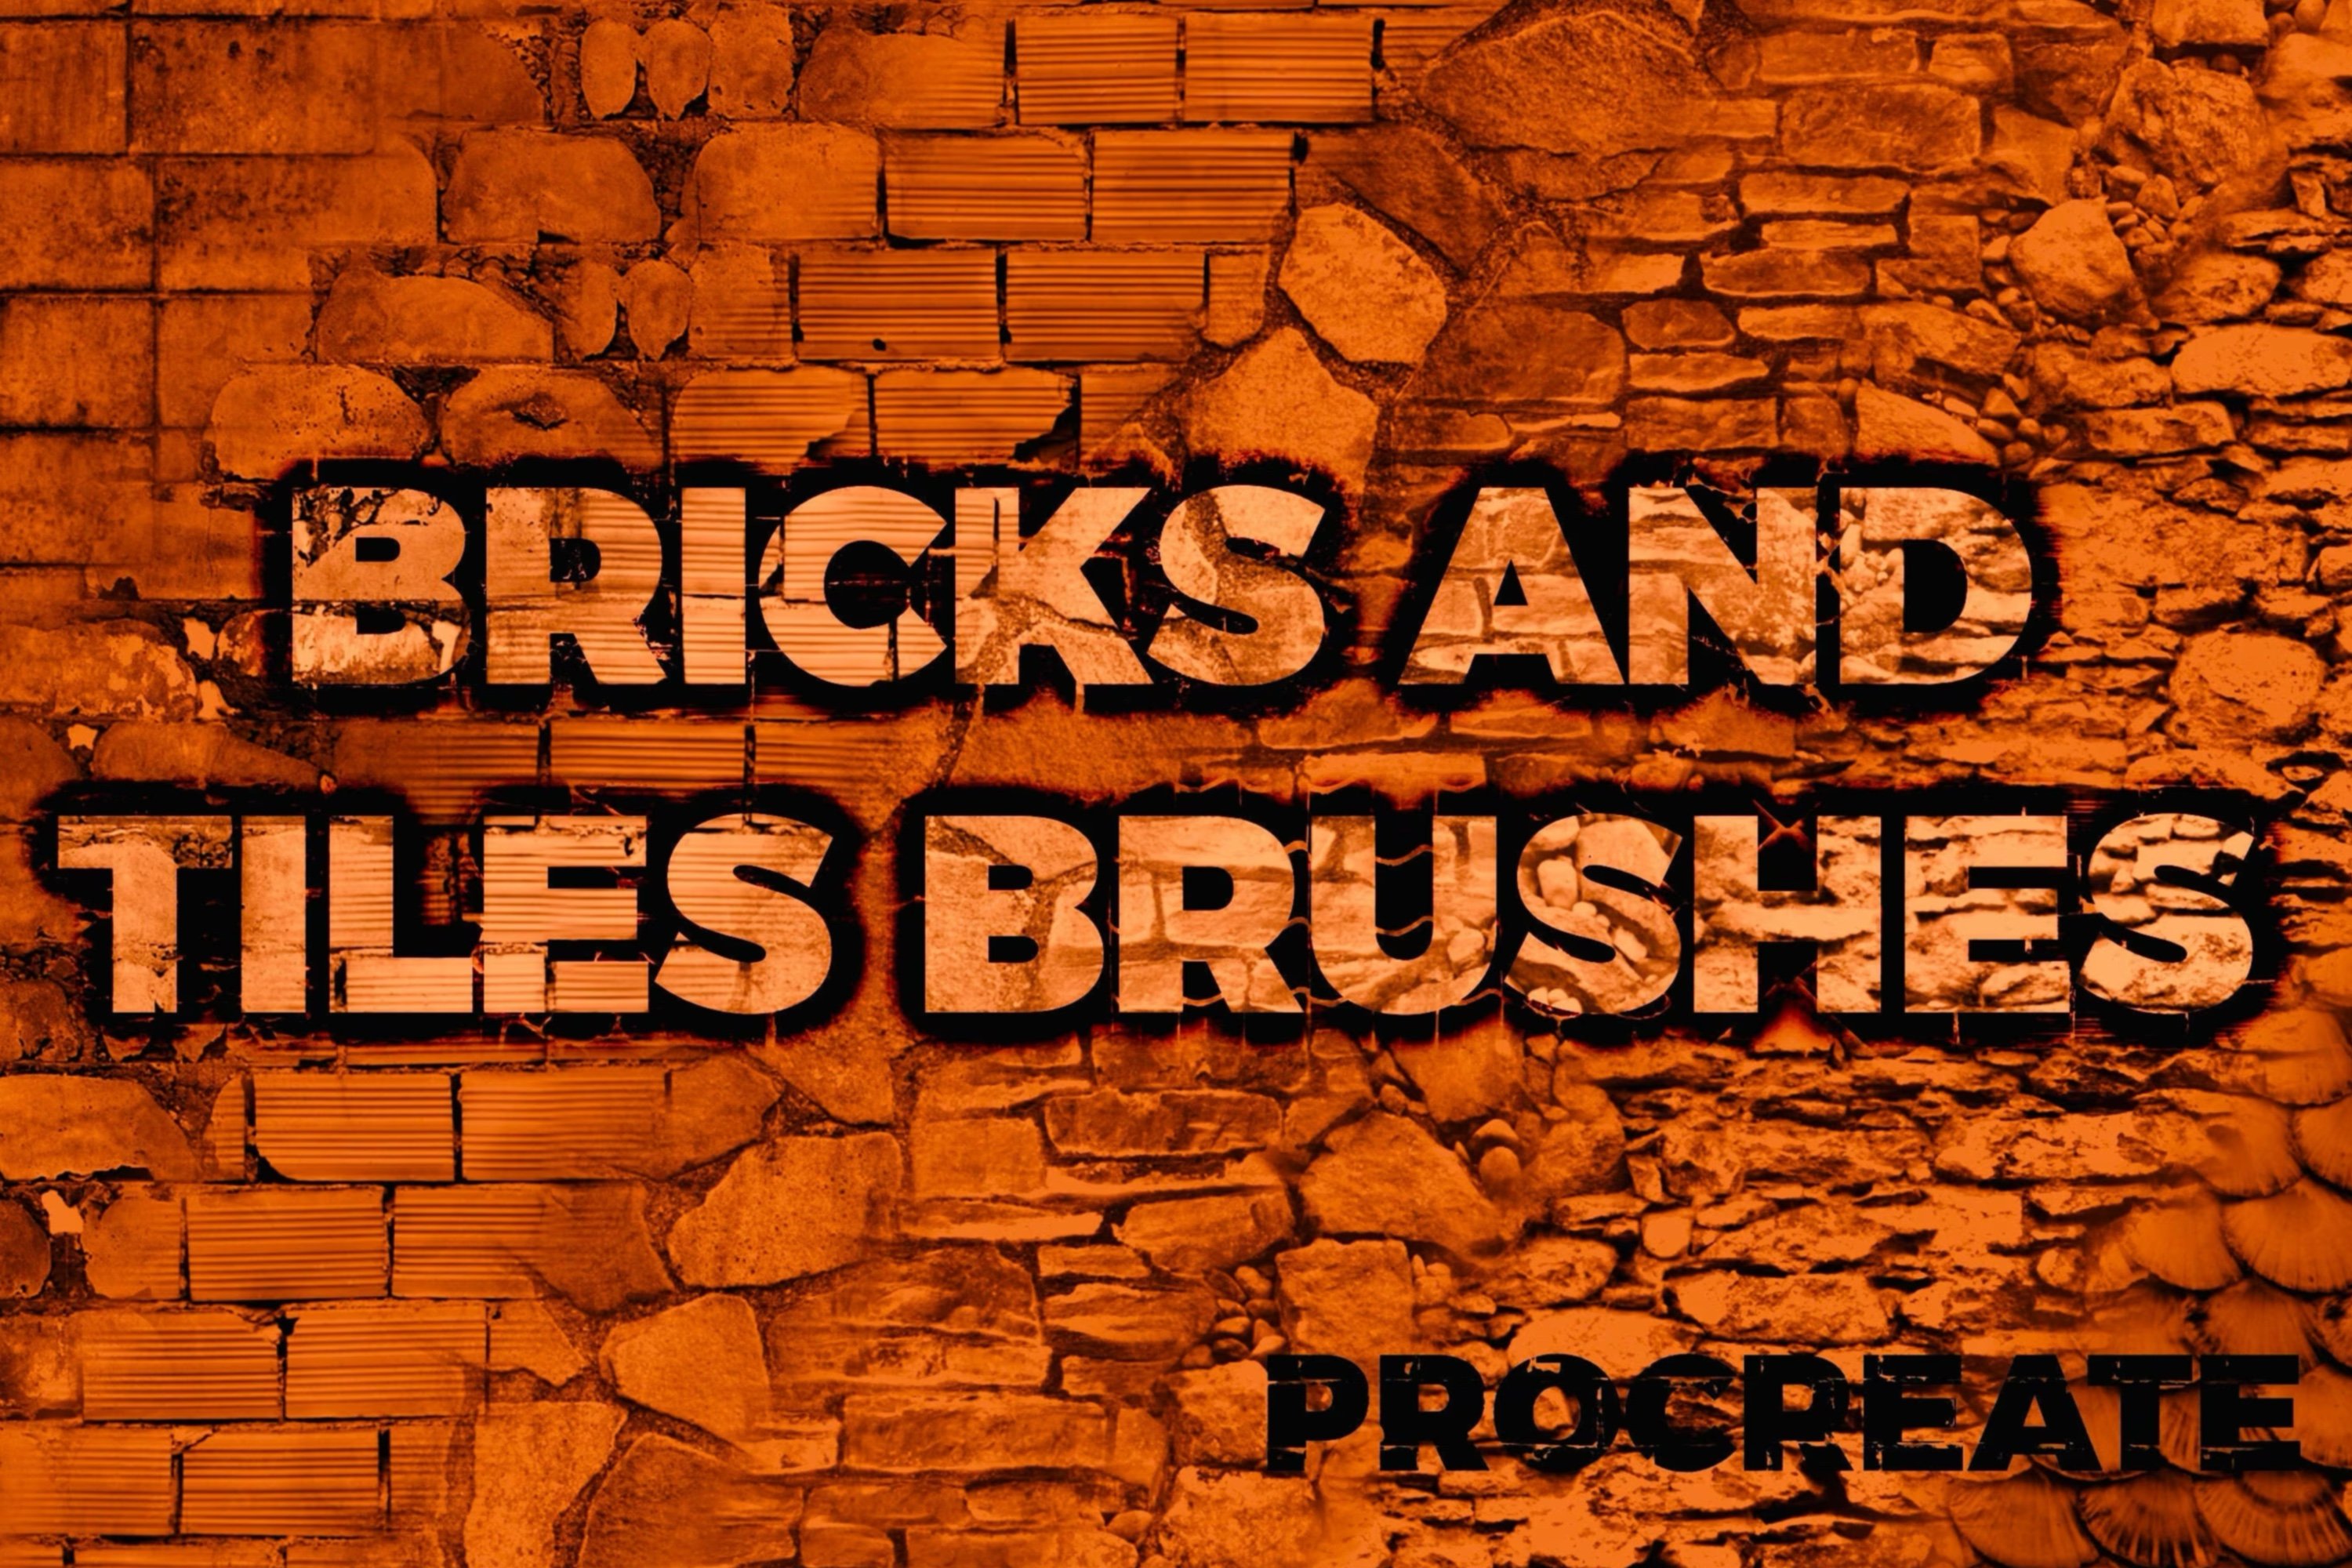 procreate brick brushes free